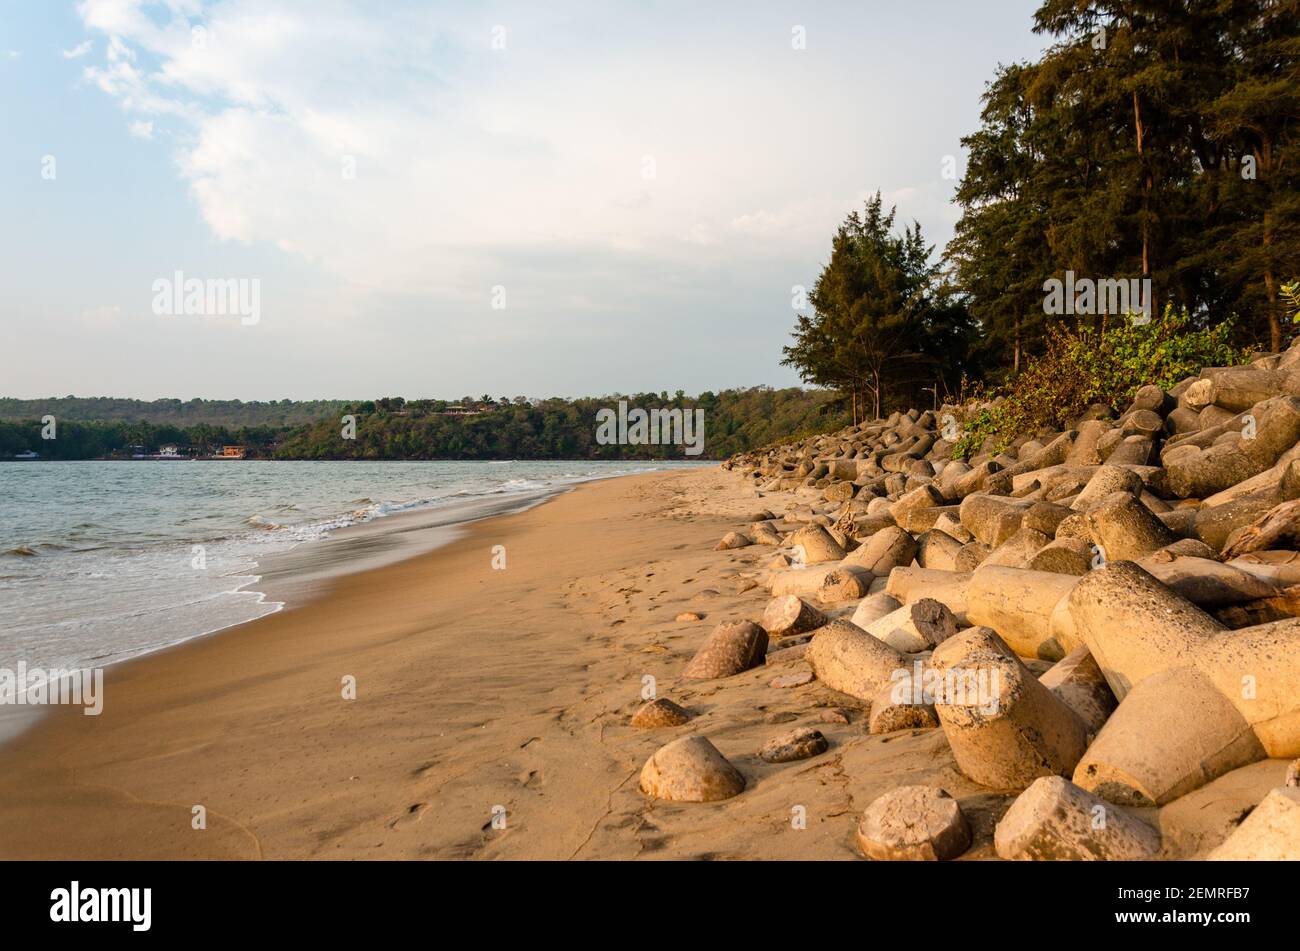 Querim Beach mit tetra Pods am Ufer, um Bodenerosion zu verhindern. Querim oder Keri Beach ist der nördlichste Strand in Goa, Indien. Stockfoto